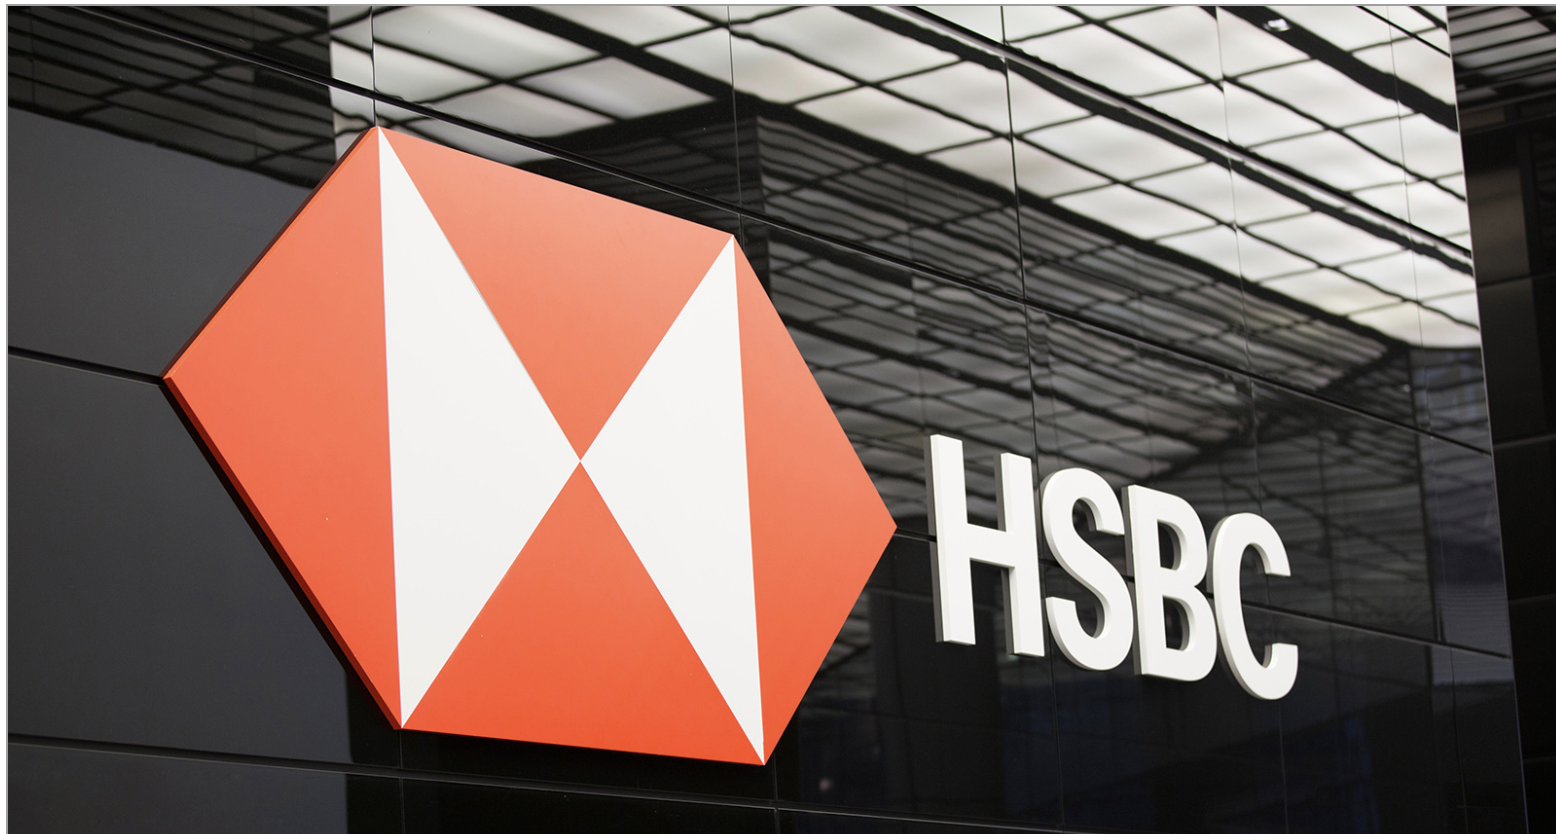 HSBC Considers New London HQ